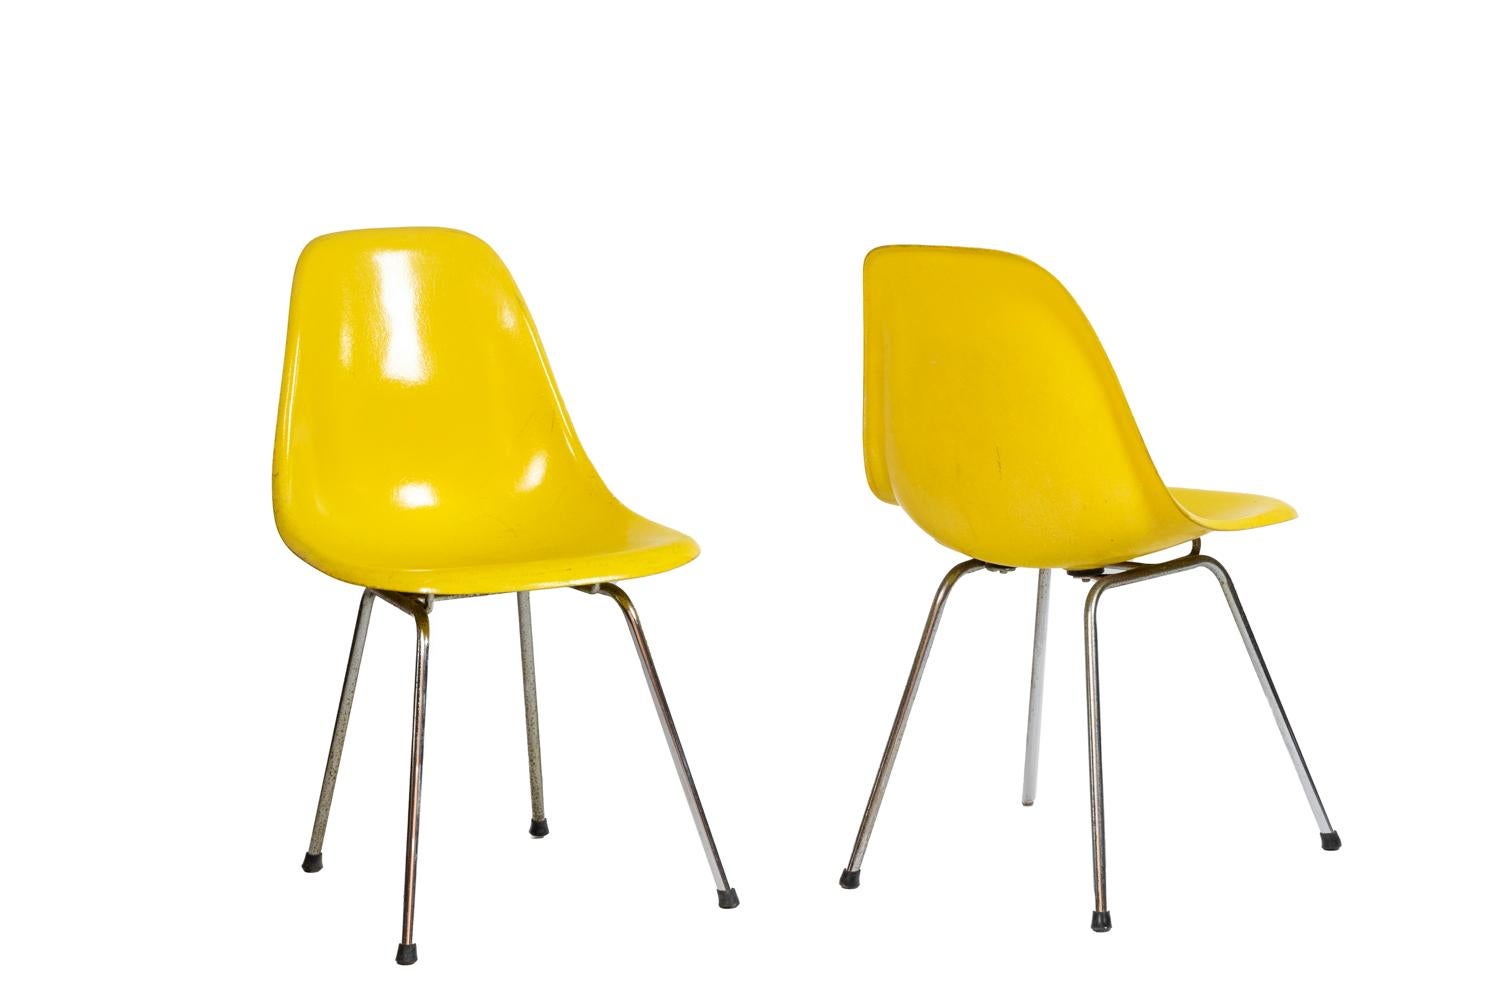 Charles Eames, zugeschrieben.
Herman Miller, herausgegeben von.

Serie von sechs Stühlen aus Glasfaserkunststoff, Modell DSX, in gelber Farbe. Sockel aus verchromtem Metall.

Amerikanisches Werk aus den 1960er Jahren.